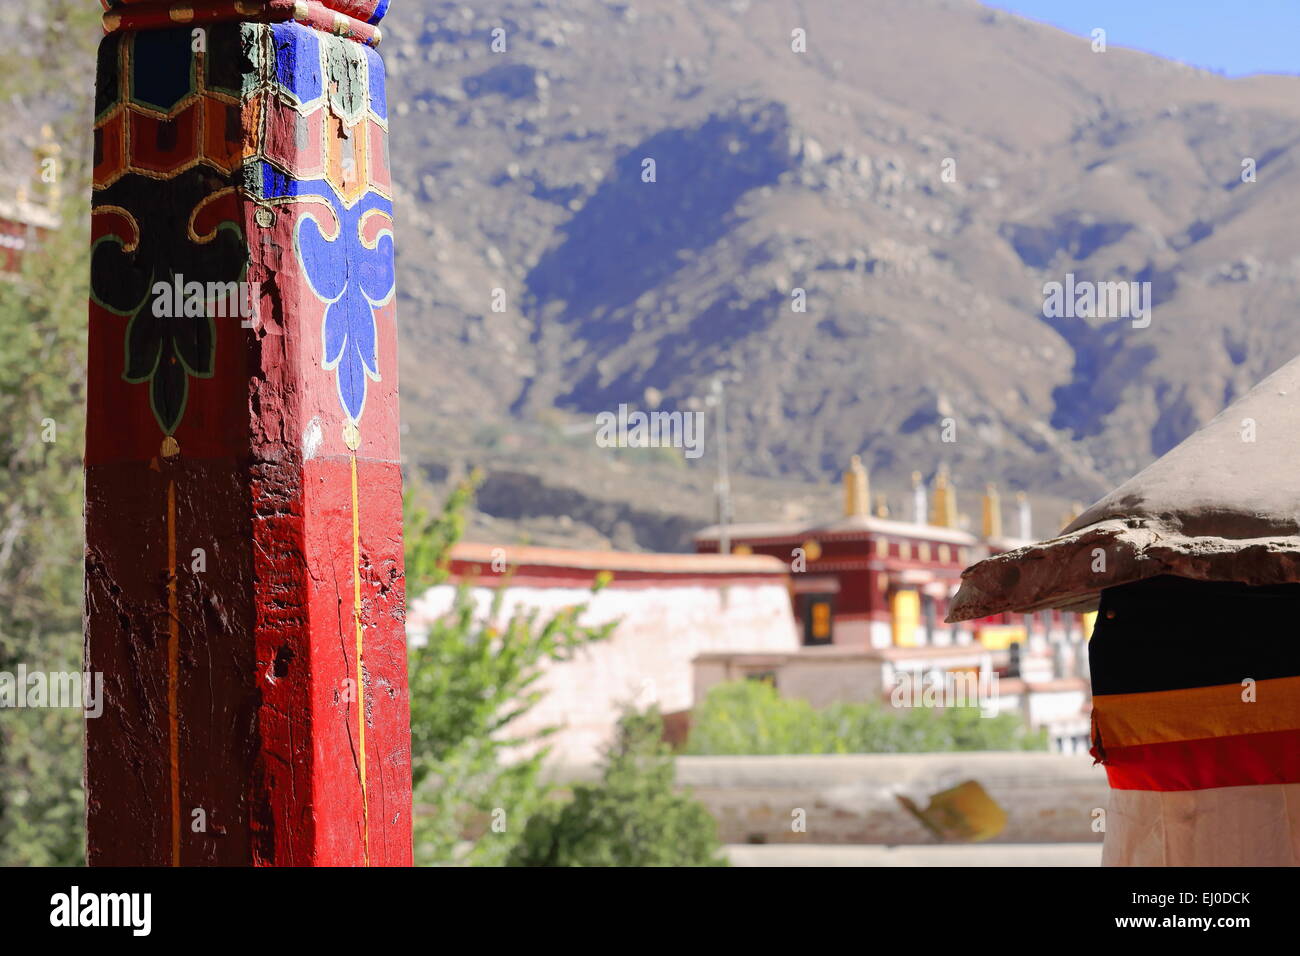 Piliers en bois peint rouge-clorist dessins-vue sur les toits de la montagne. Drepung-Rice Heap monastère de l'ordre Gelugpa. Banque D'Images